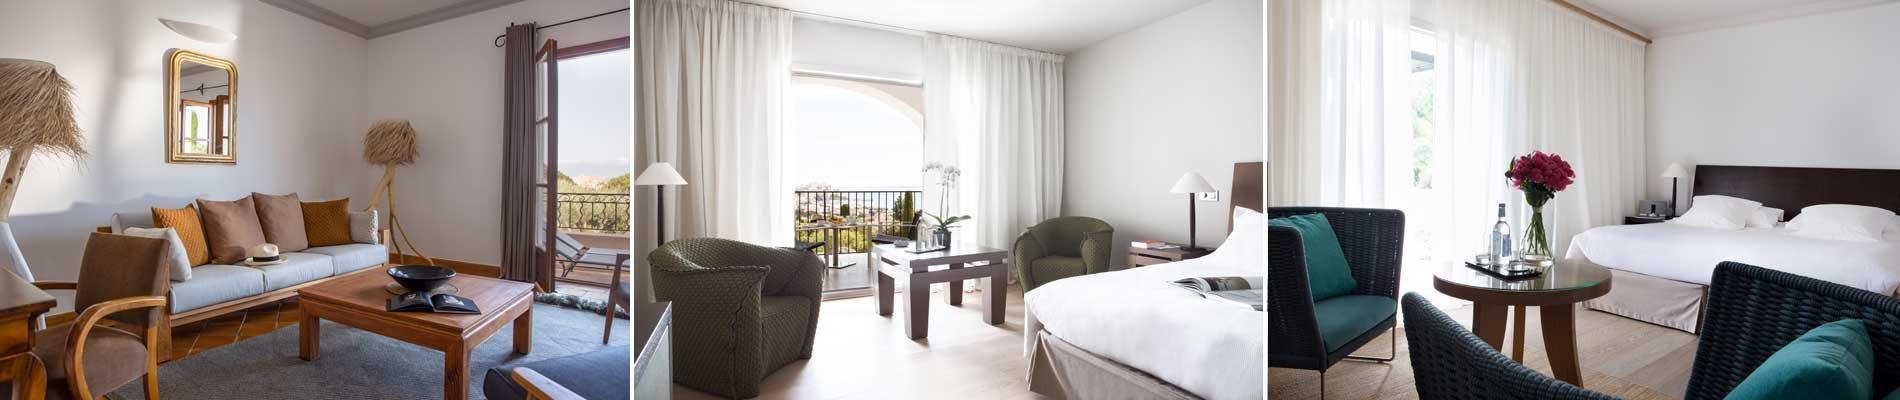 hotel la villa calvi corse corsica luxe hotel